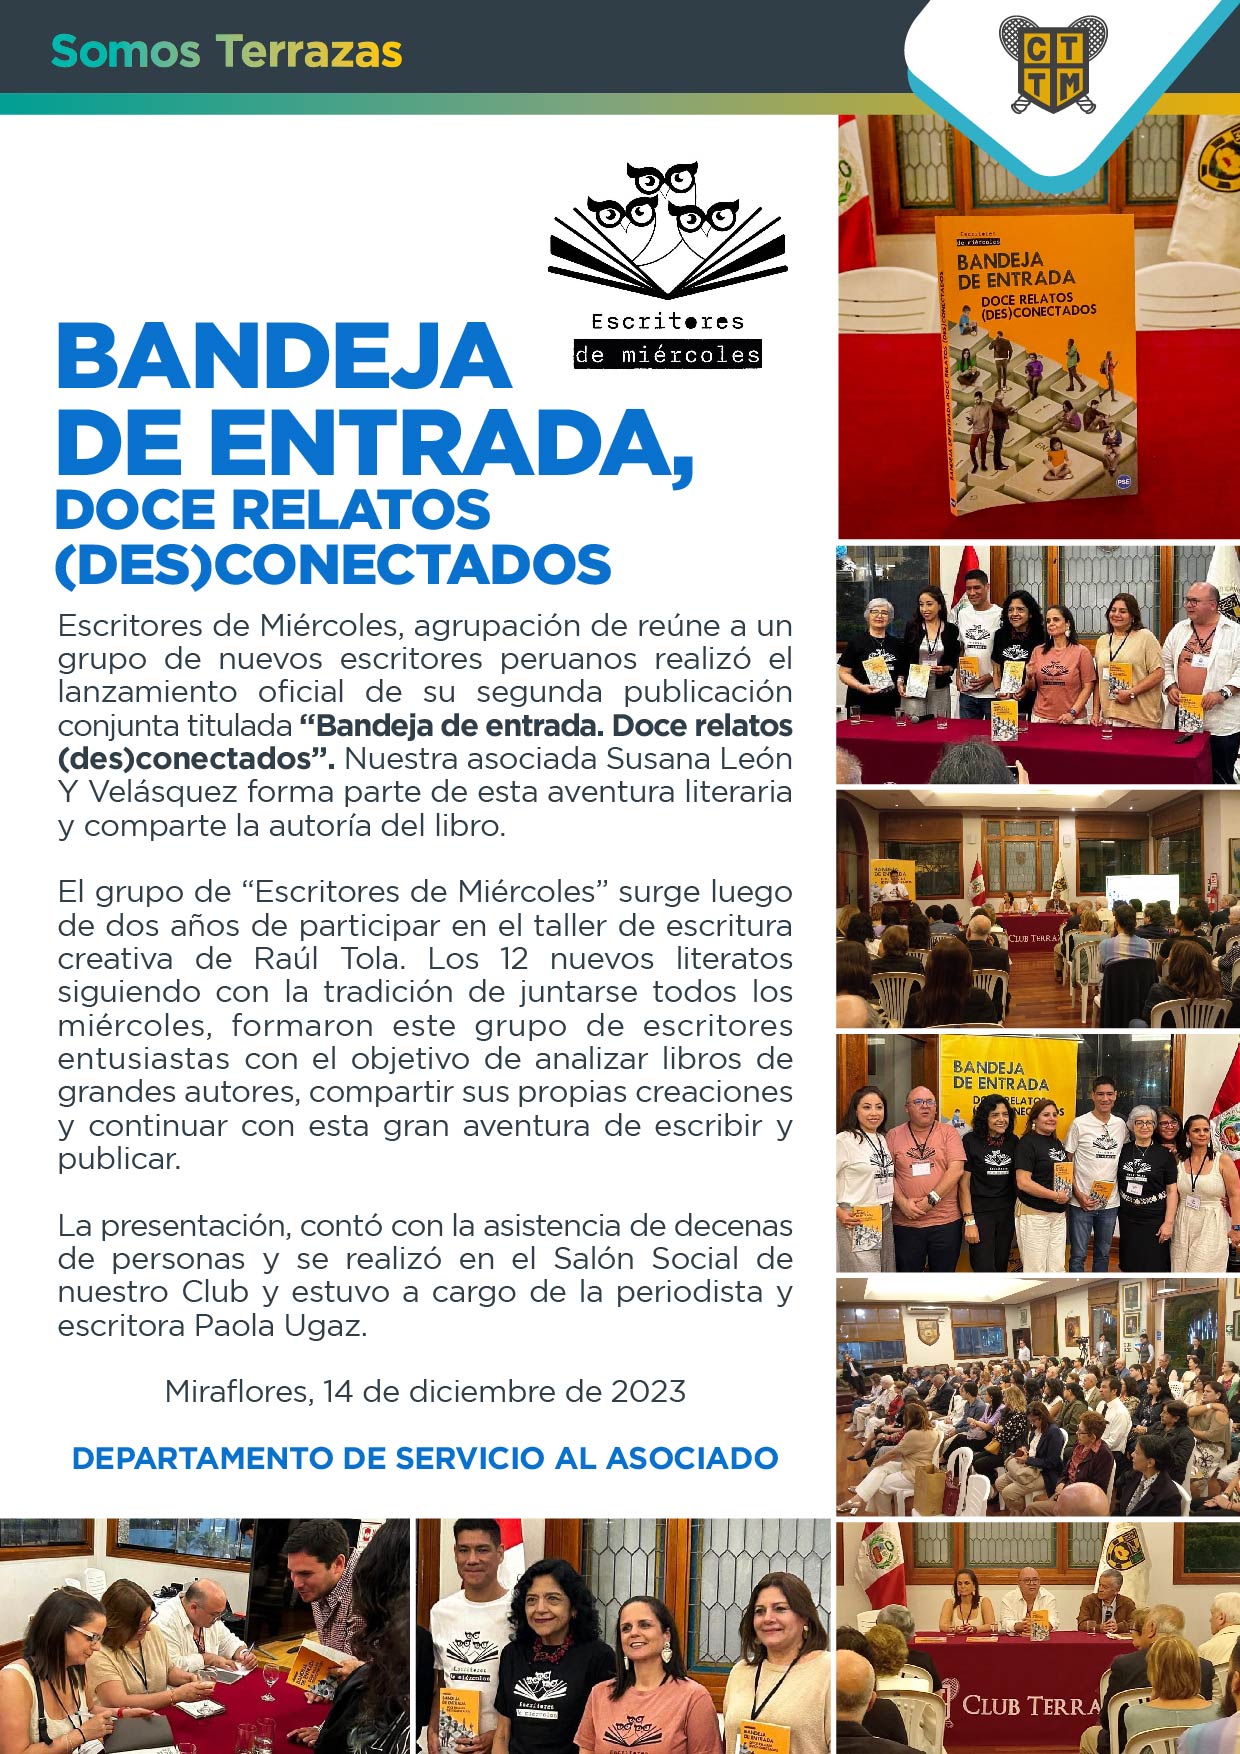  BANDEJA DE ENTRADA, DOCE RELATOS (DES)CONECTADOS